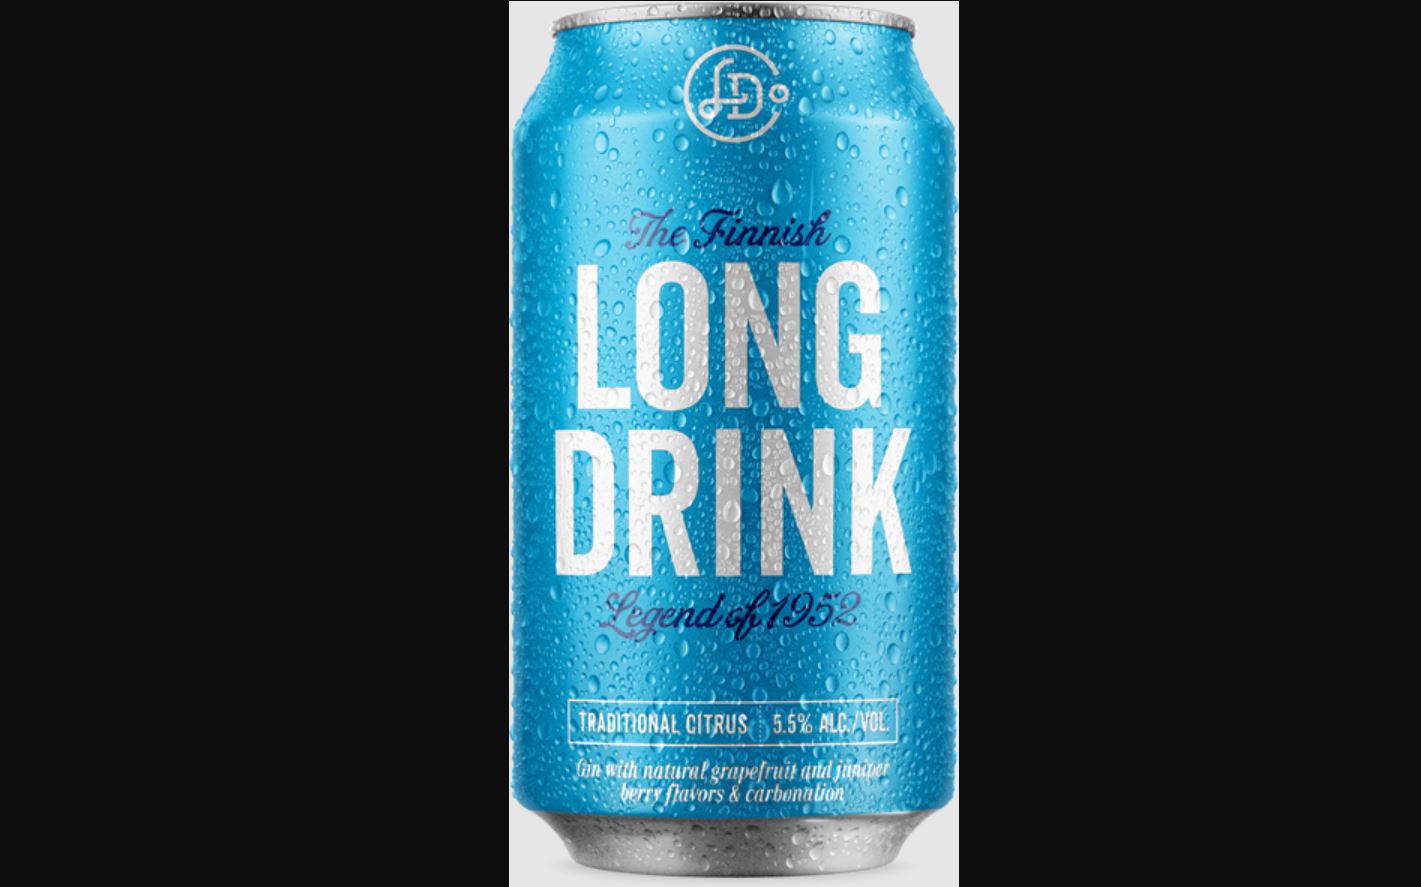 Finnish Long Drink